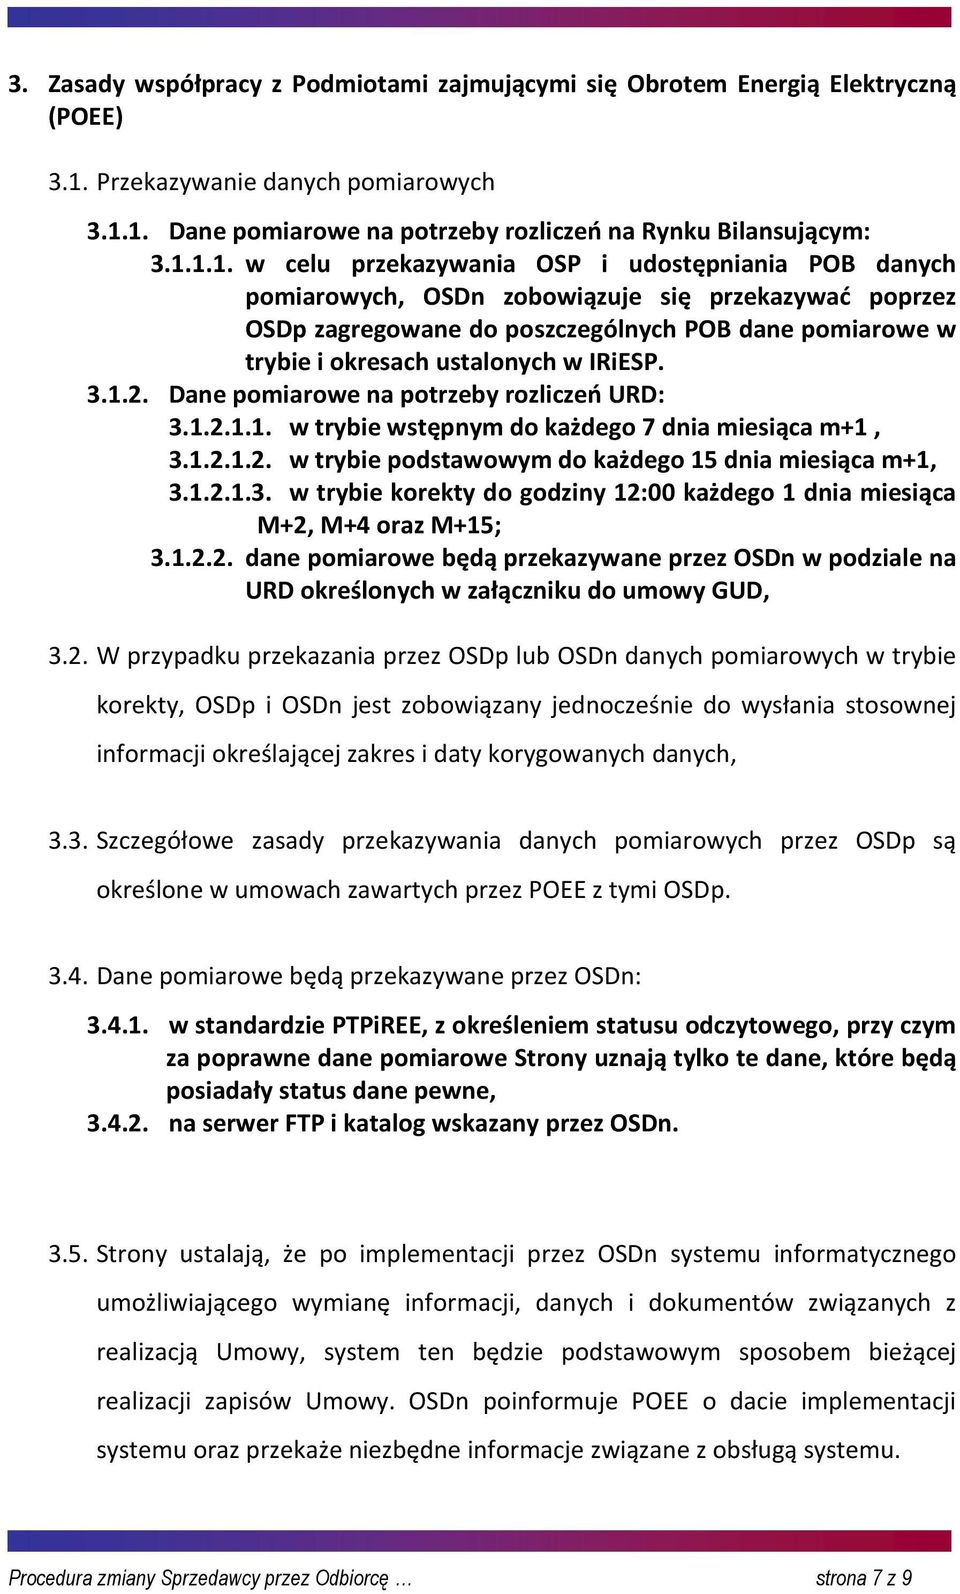 1. Dane pomiarowe na potrzeby rozliczeń na Rynku Bilansującym: 3.1.1.1. w celu przekazywania OSP i udostępniania POB danych pomiarowych, OSDn zobowiązuje się przekazywać poprzez OSDp zagregowane do